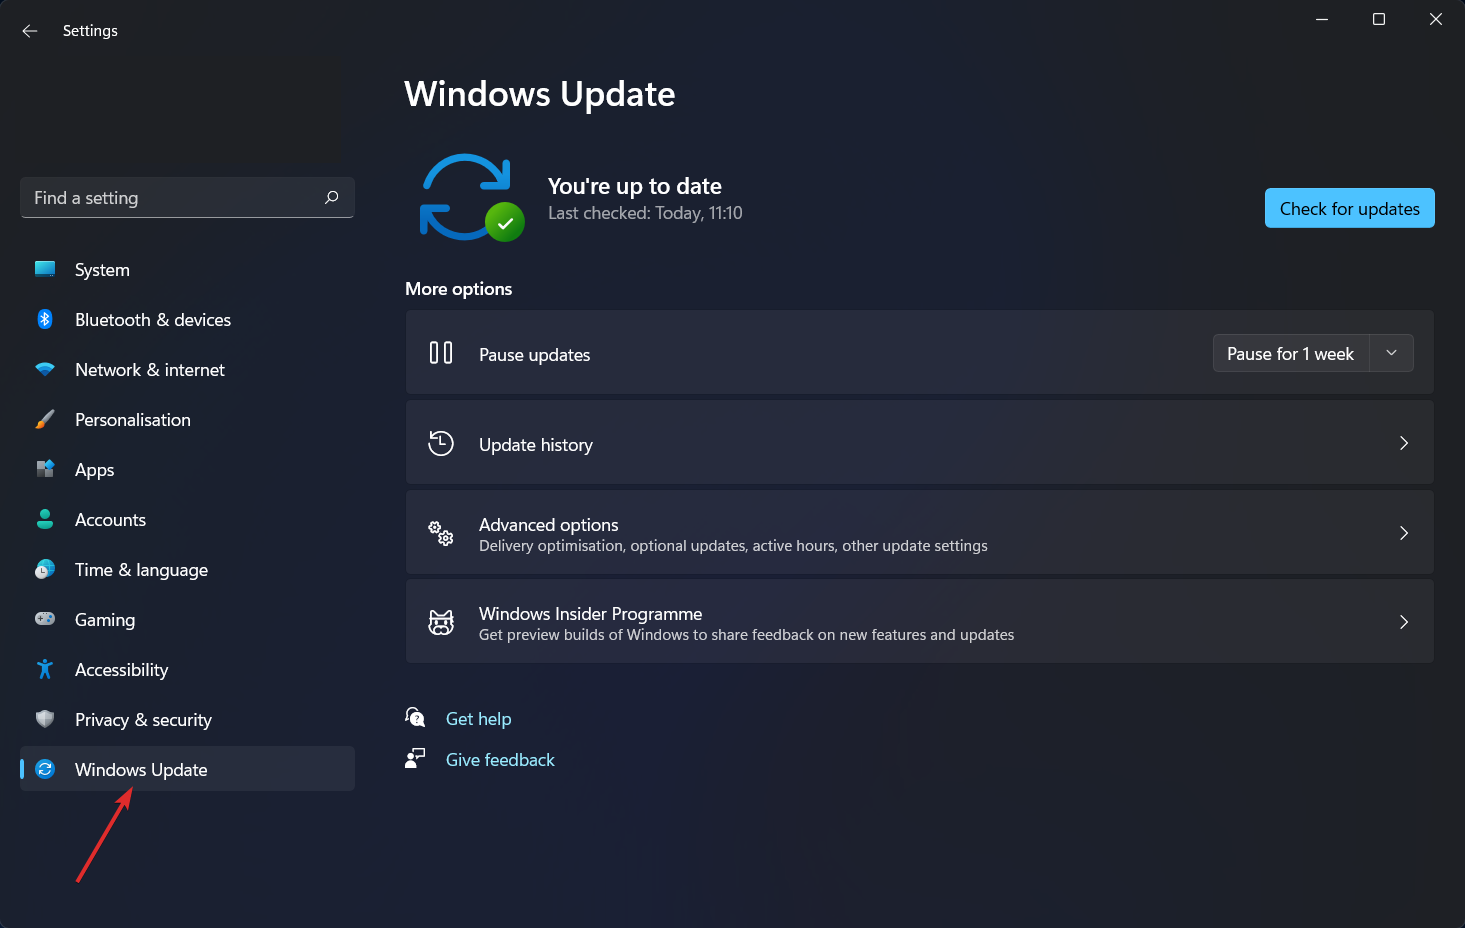 Taroteo de Windows-Update Mouse en Valorant